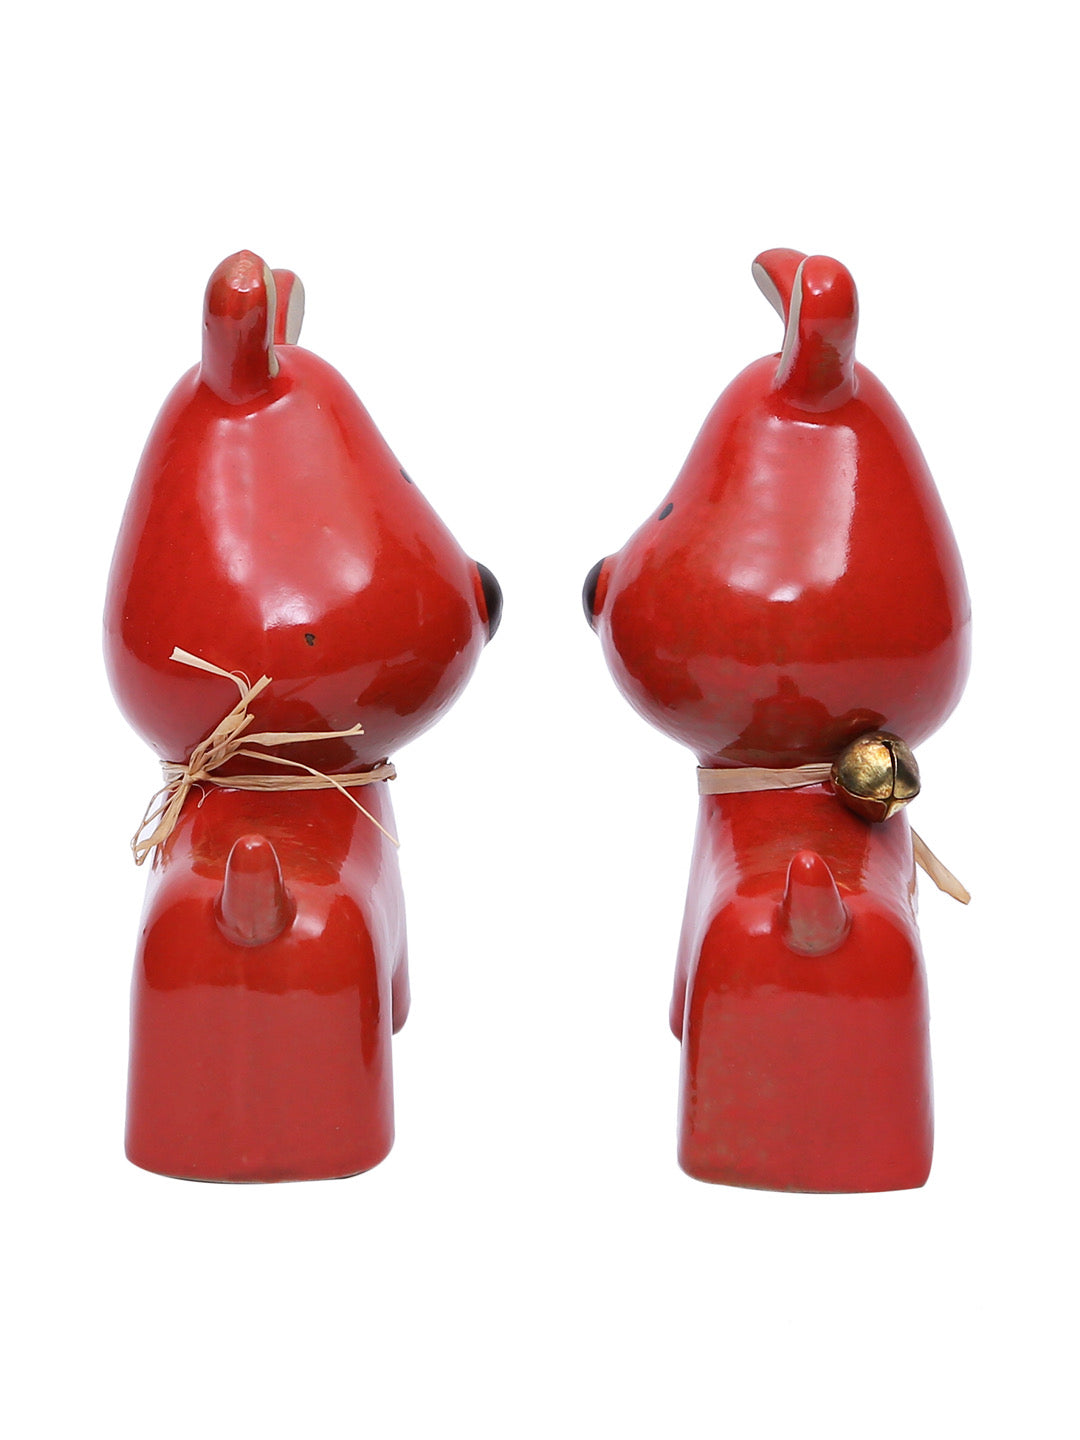 Cartoonish Delightful Red Puppy Duo Ceramic Set - Default Title (SHOW19571)